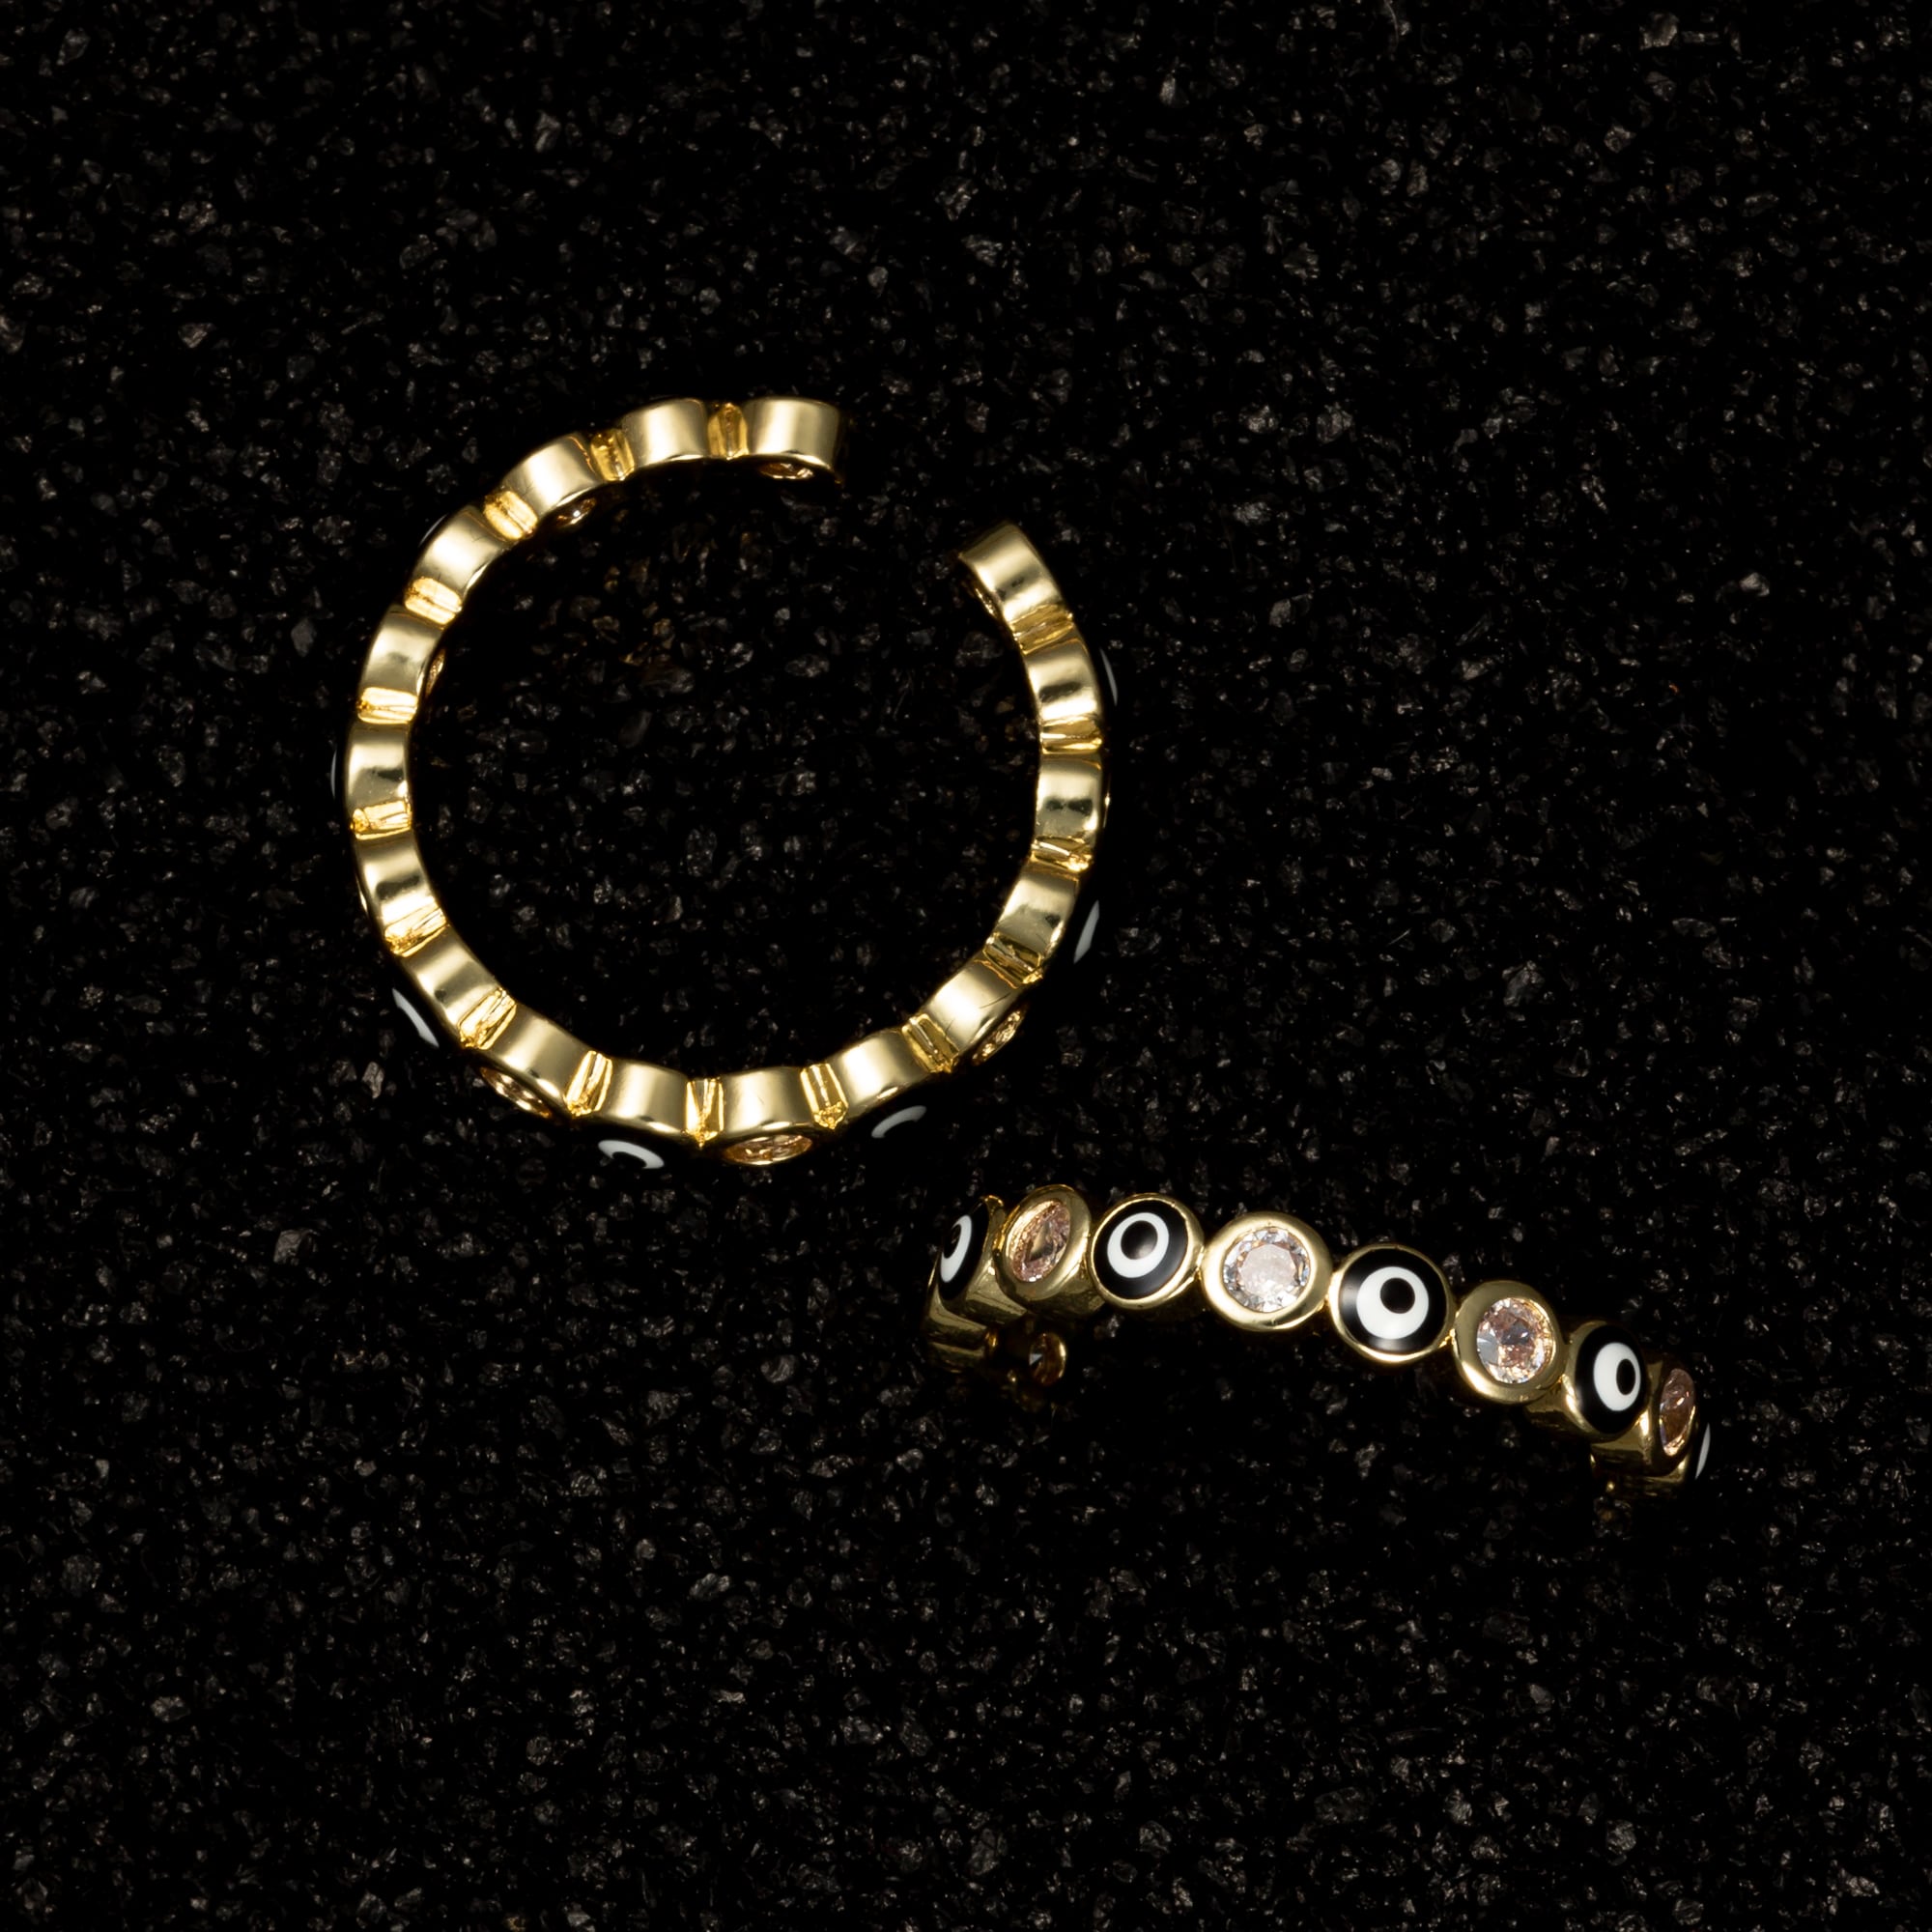 Evil Eye Ring with Gemstones - Black - Rings